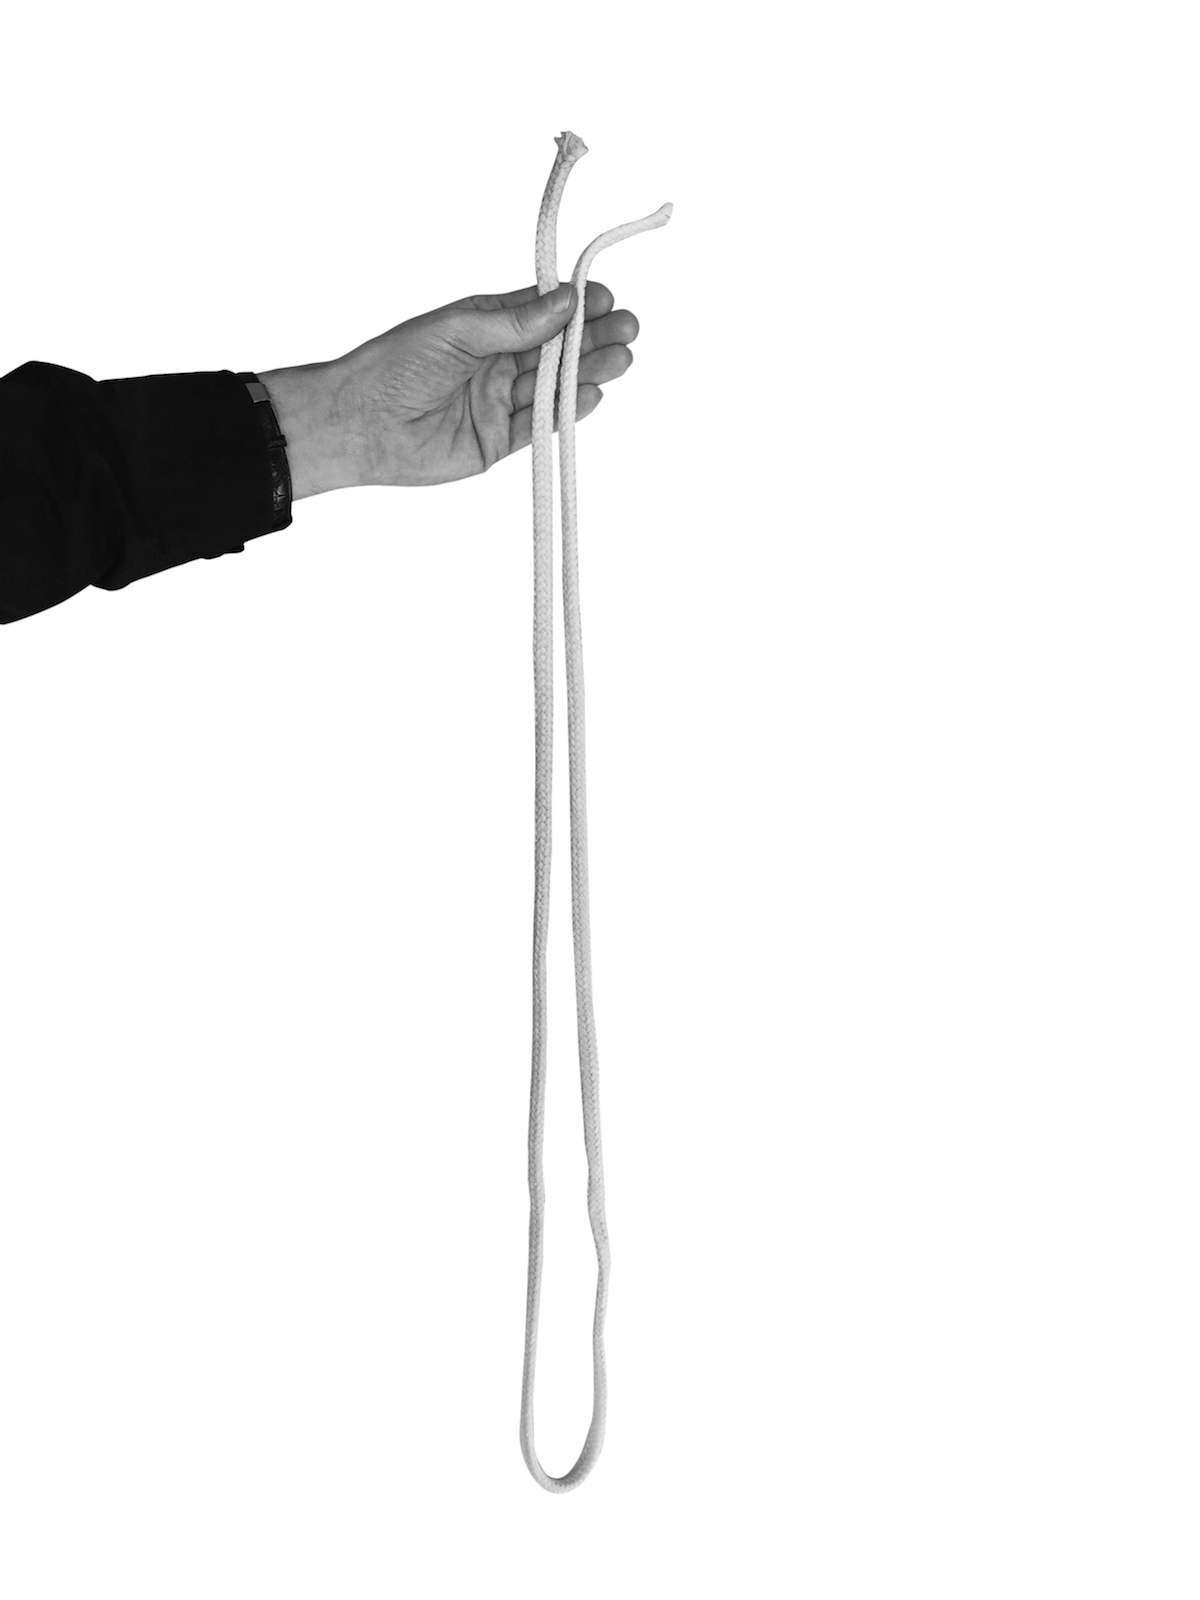 Cut and restore rope trick - Wikipedia